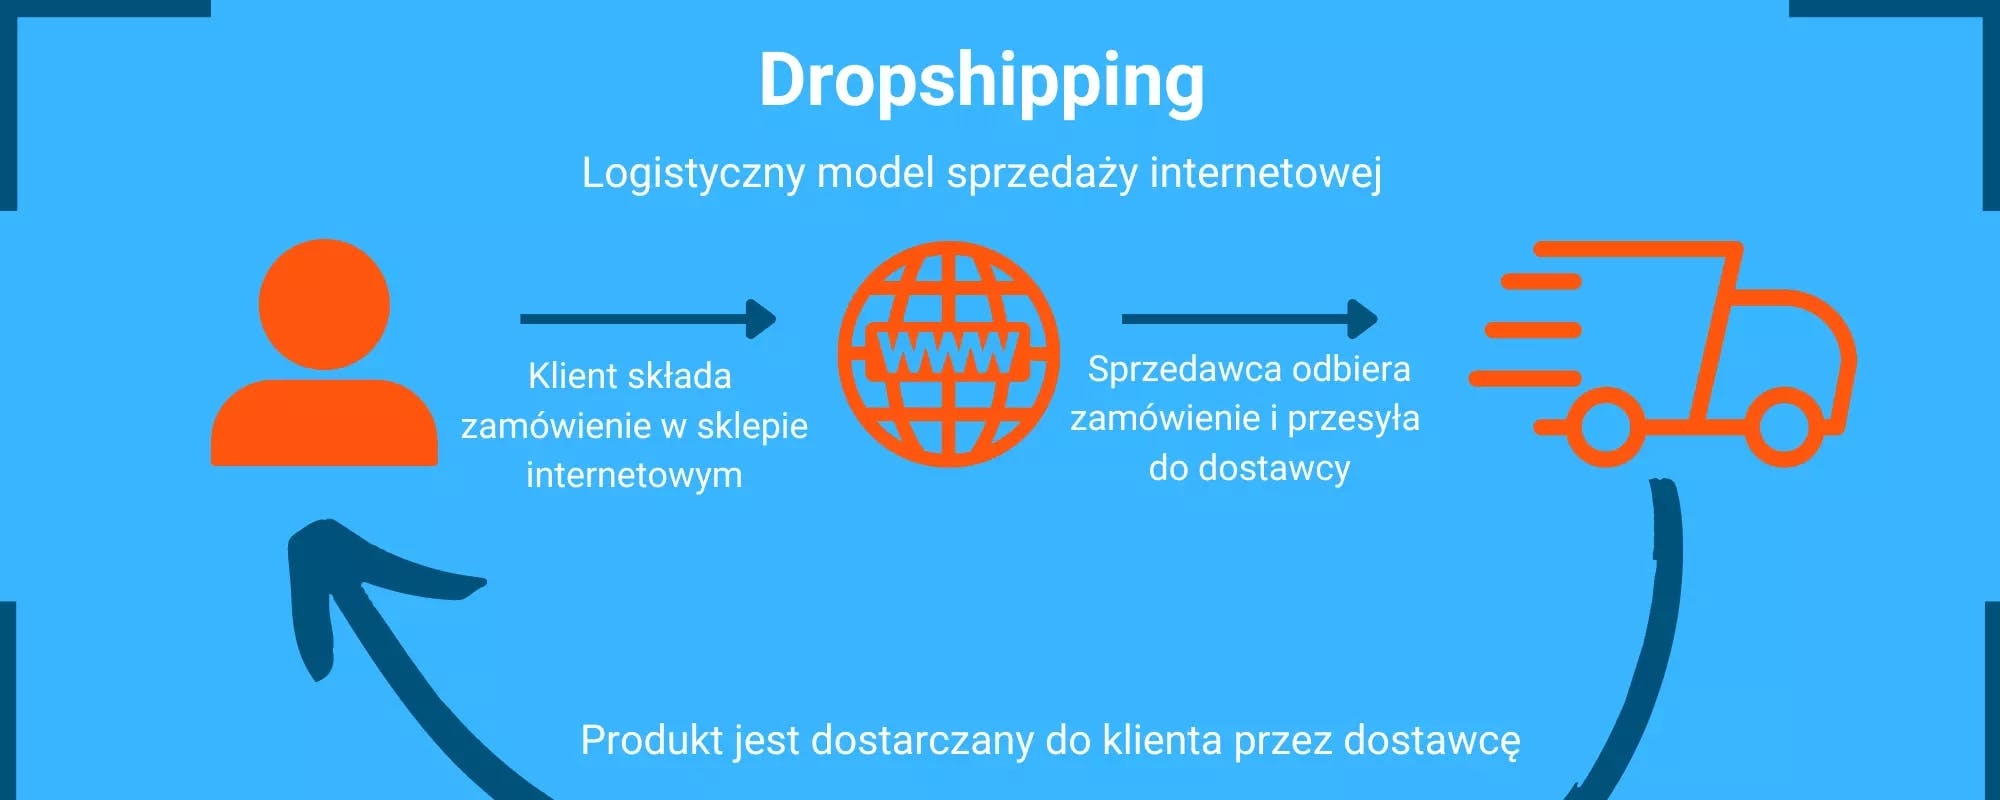 Dropshipping - czym jest i jak korzystać